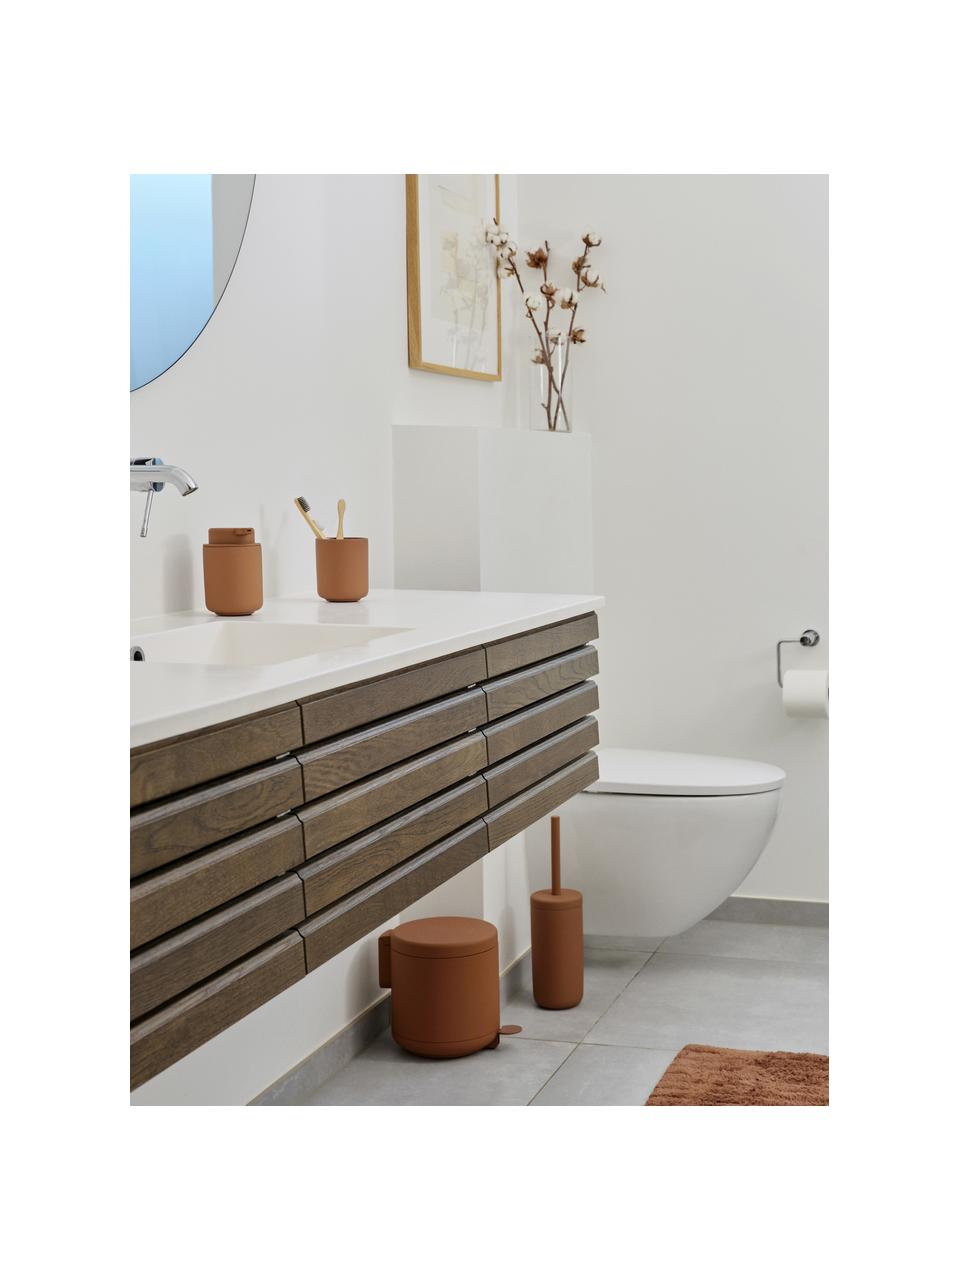 Toilettenbürste Ume mit Behälter, Behälter: Steingut überzogen mit So, Griff: Kunststoff, Terrakotta, Ø 10 x H 39 cm